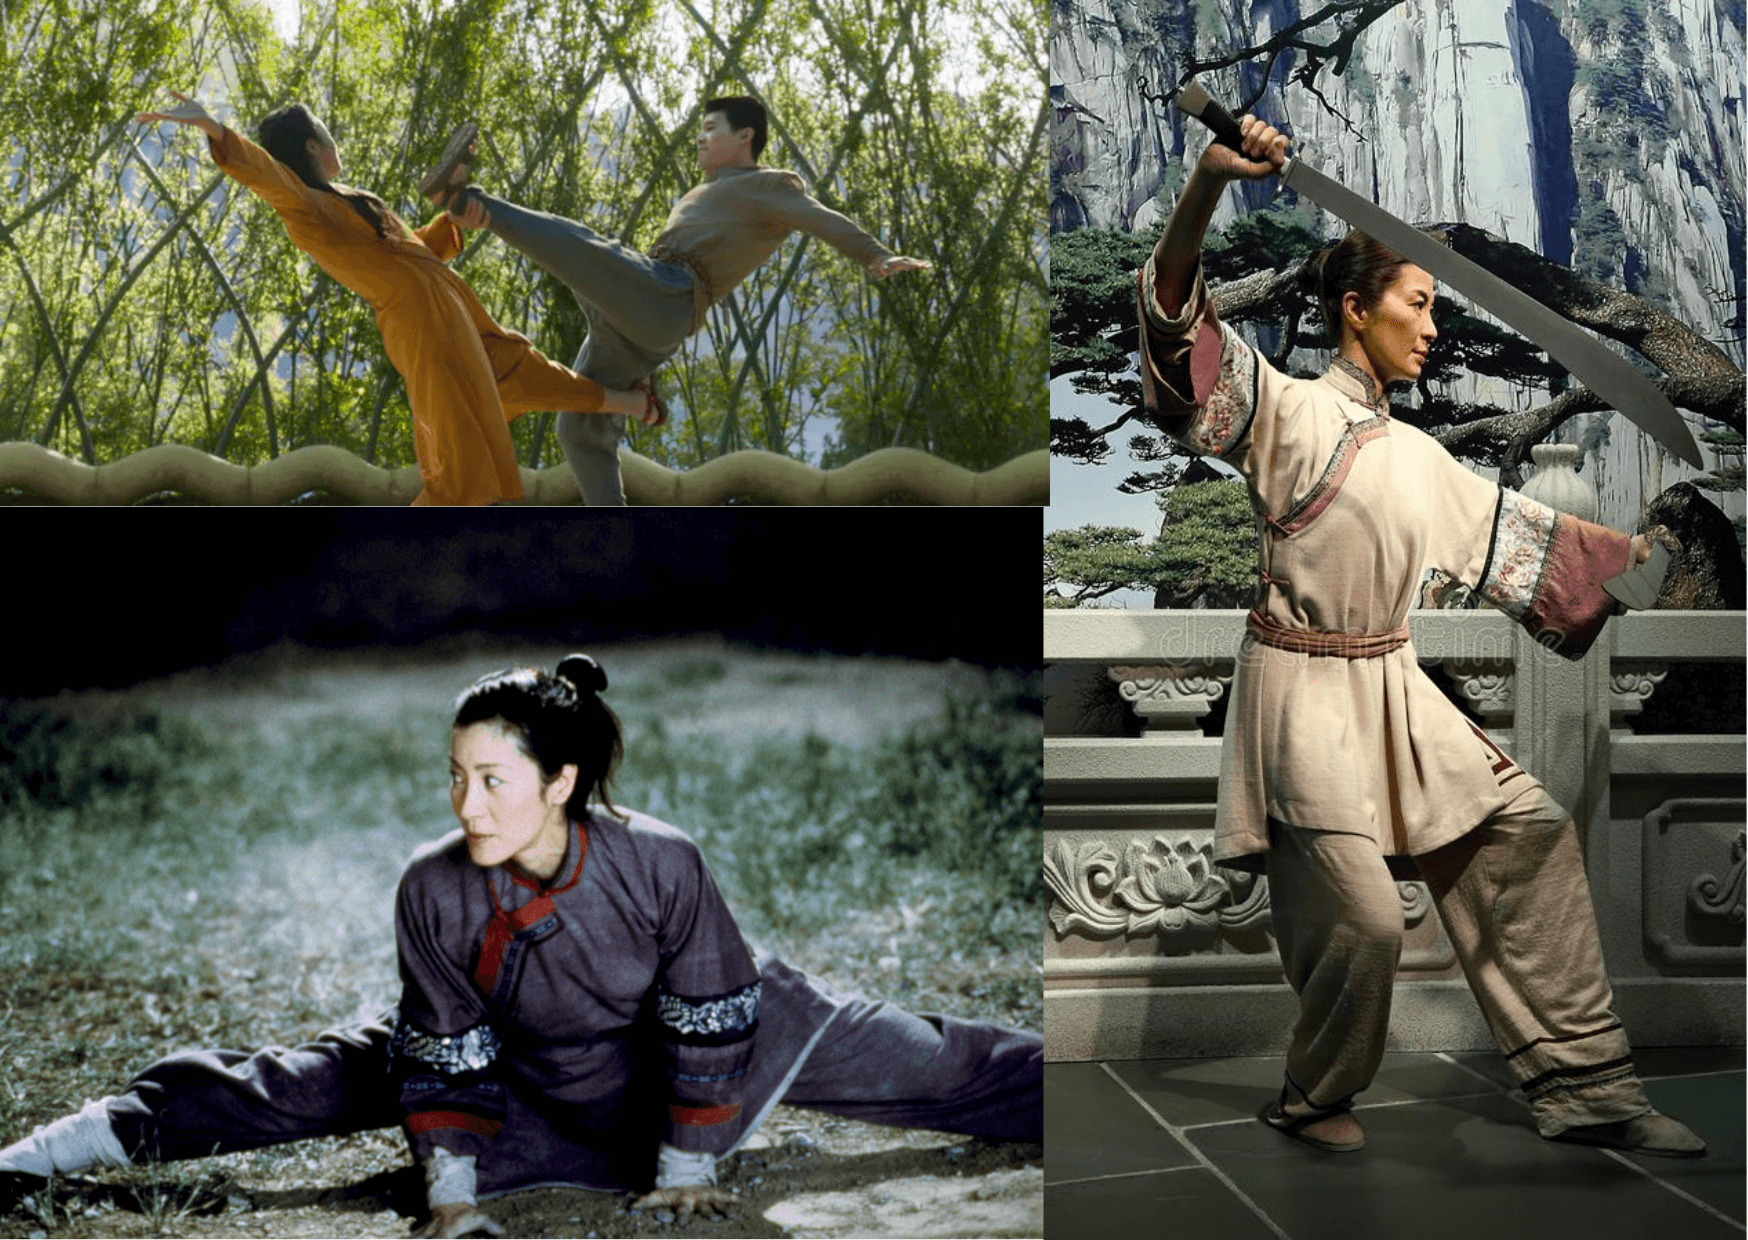 Michelle Yeoh - A Martial art Expert